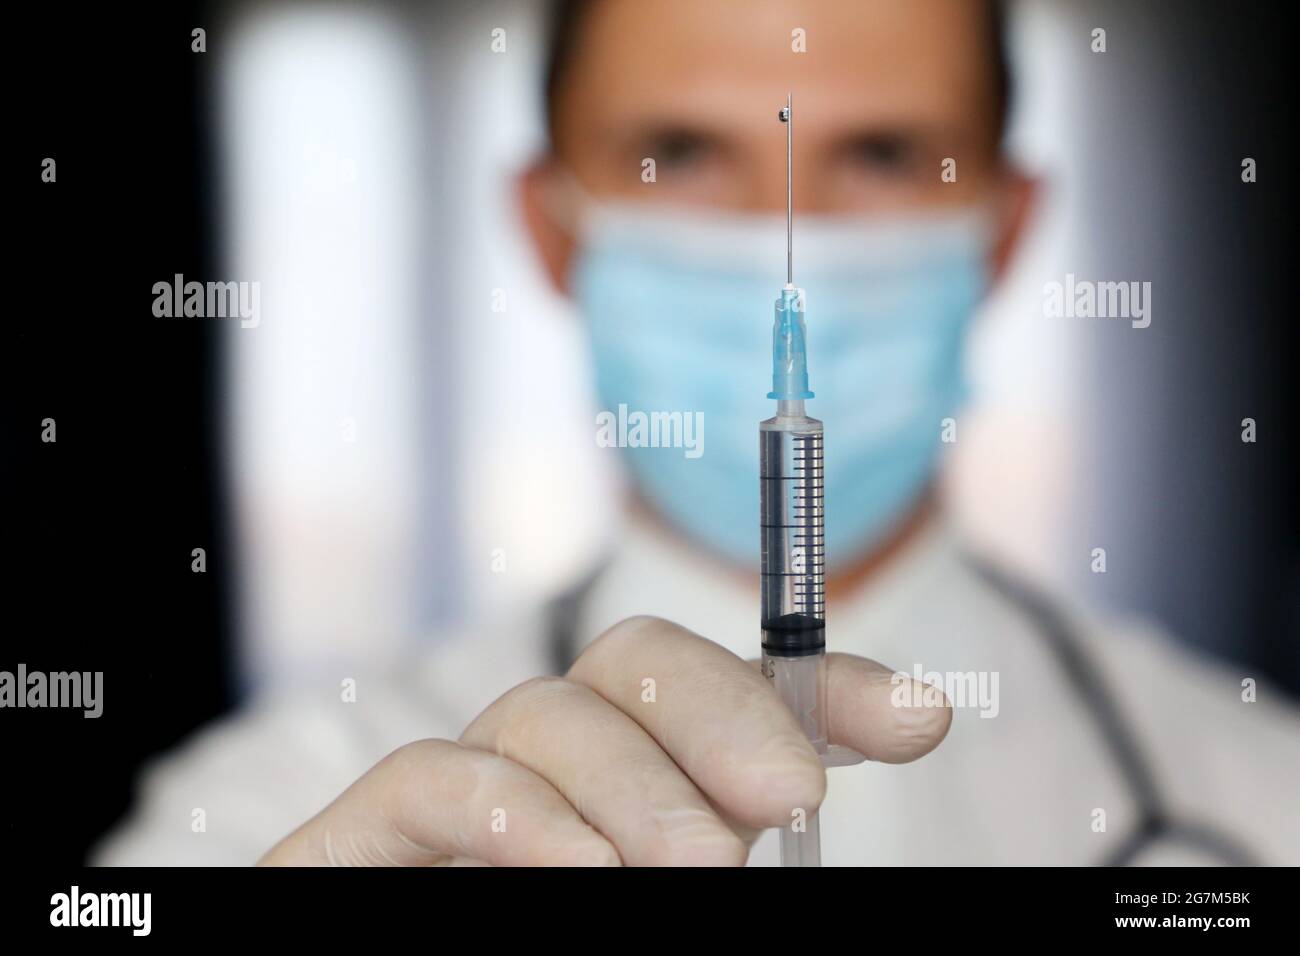 Médecin avec seringue en main, homme dans un masque médical se préparant à l'injection. Concept de vaccination pendant la pandémie de Covid-19 Banque D'Images